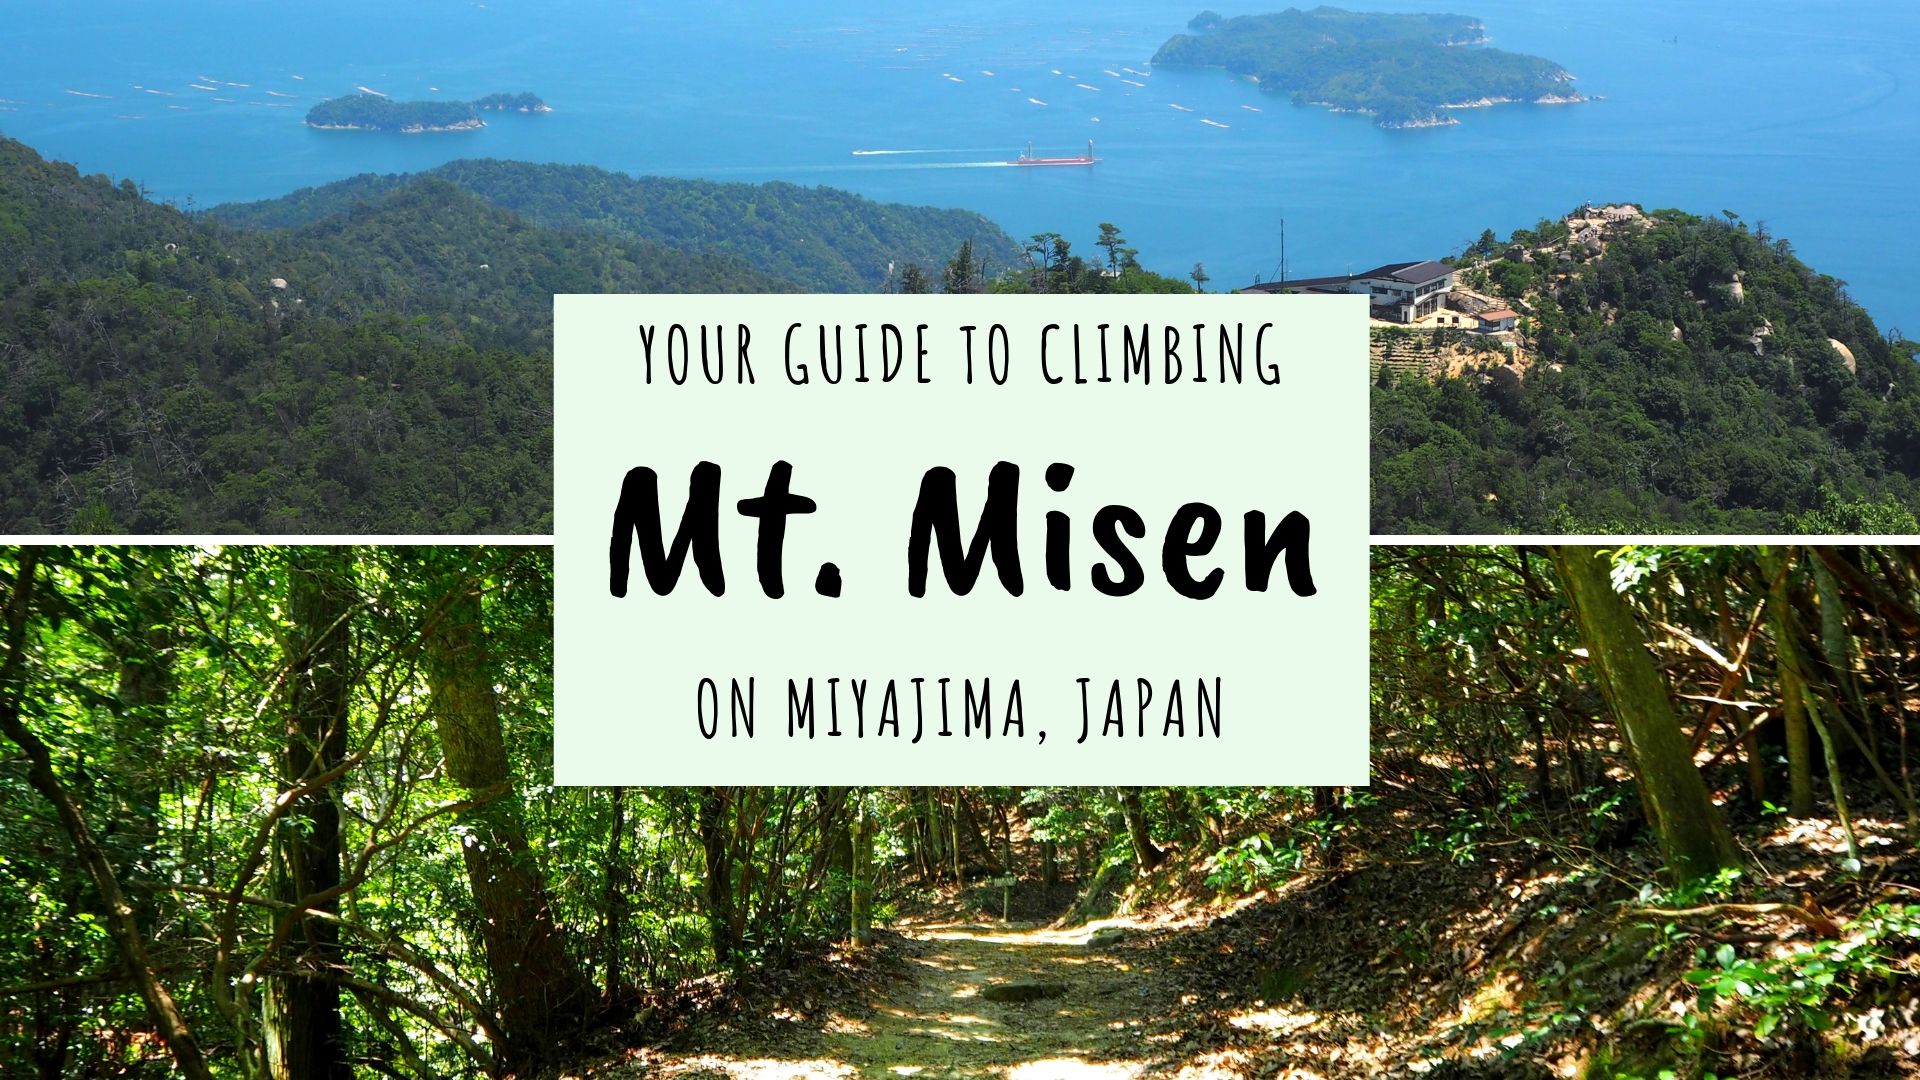 Mt. Misen Hike and Observatory on Miyajima Island, Japan